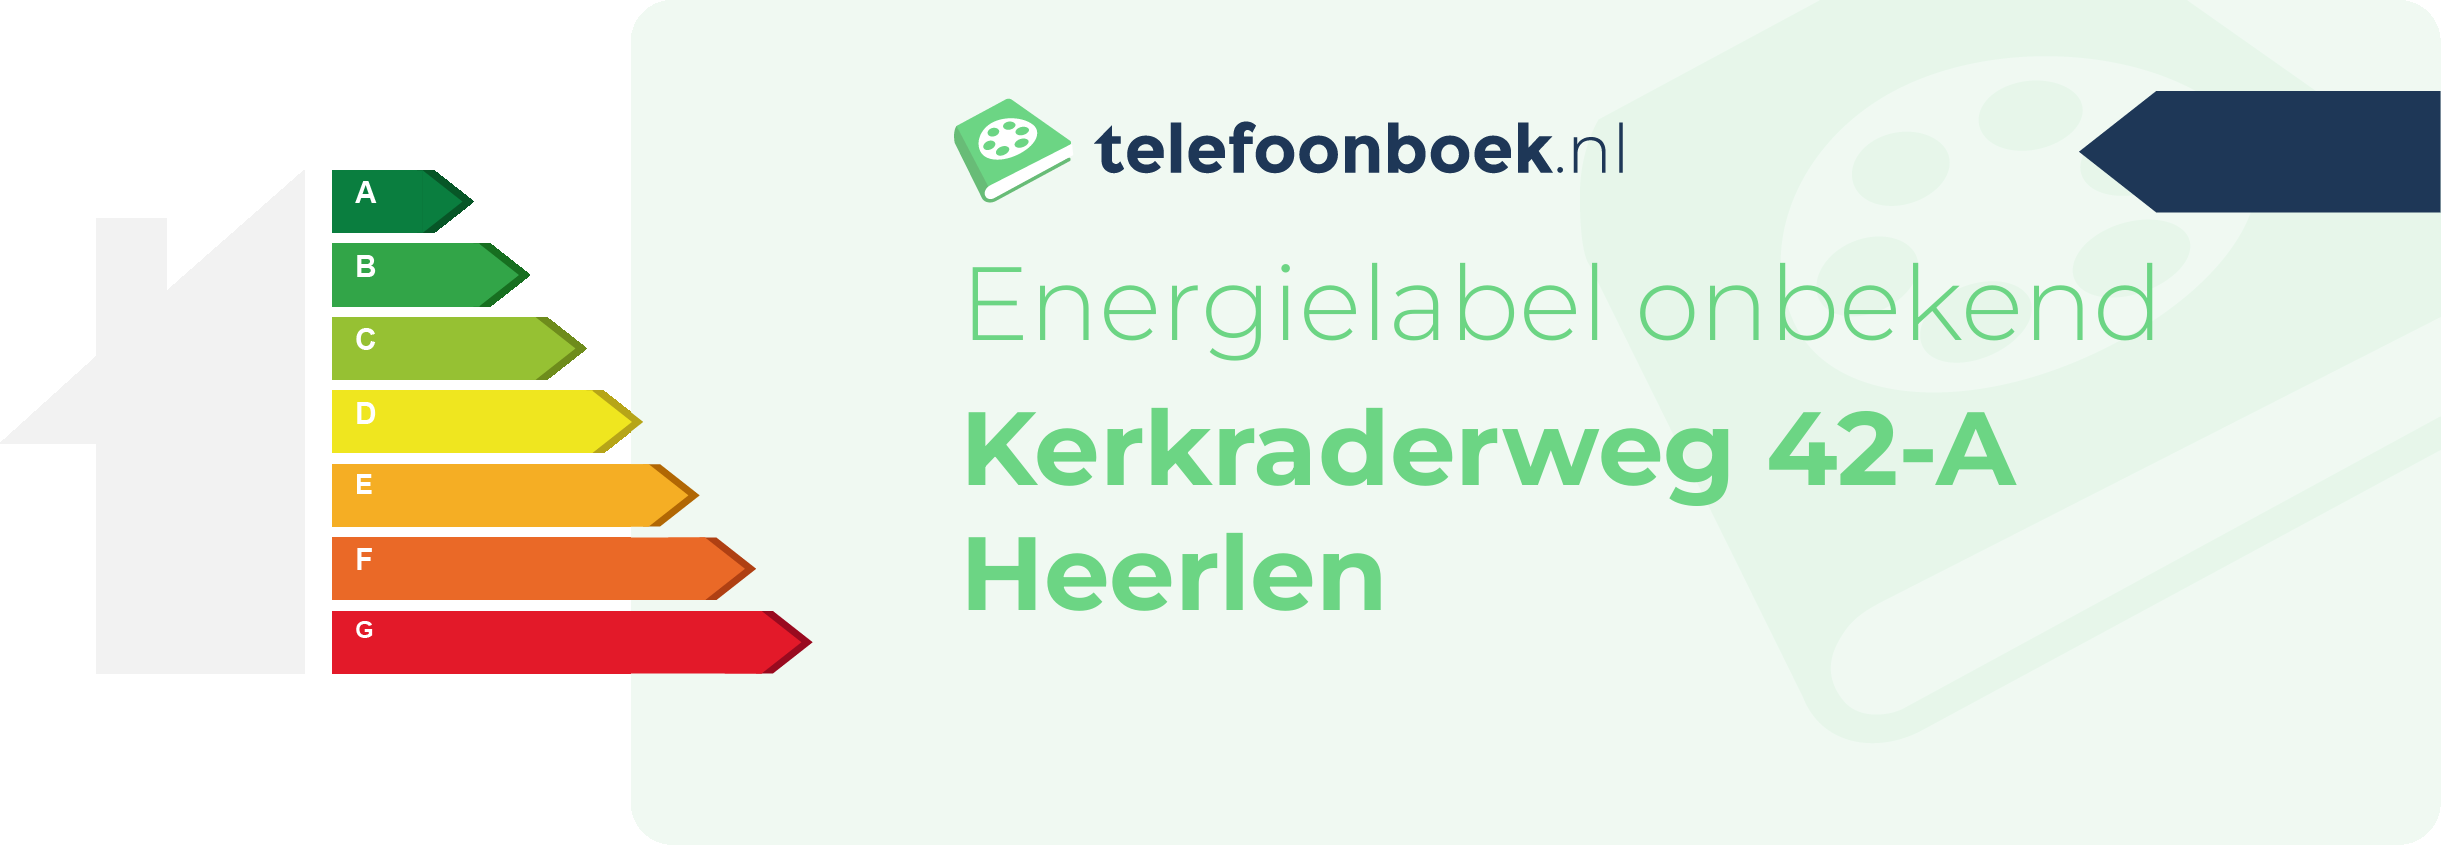 Energielabel Kerkraderweg 42-A Heerlen